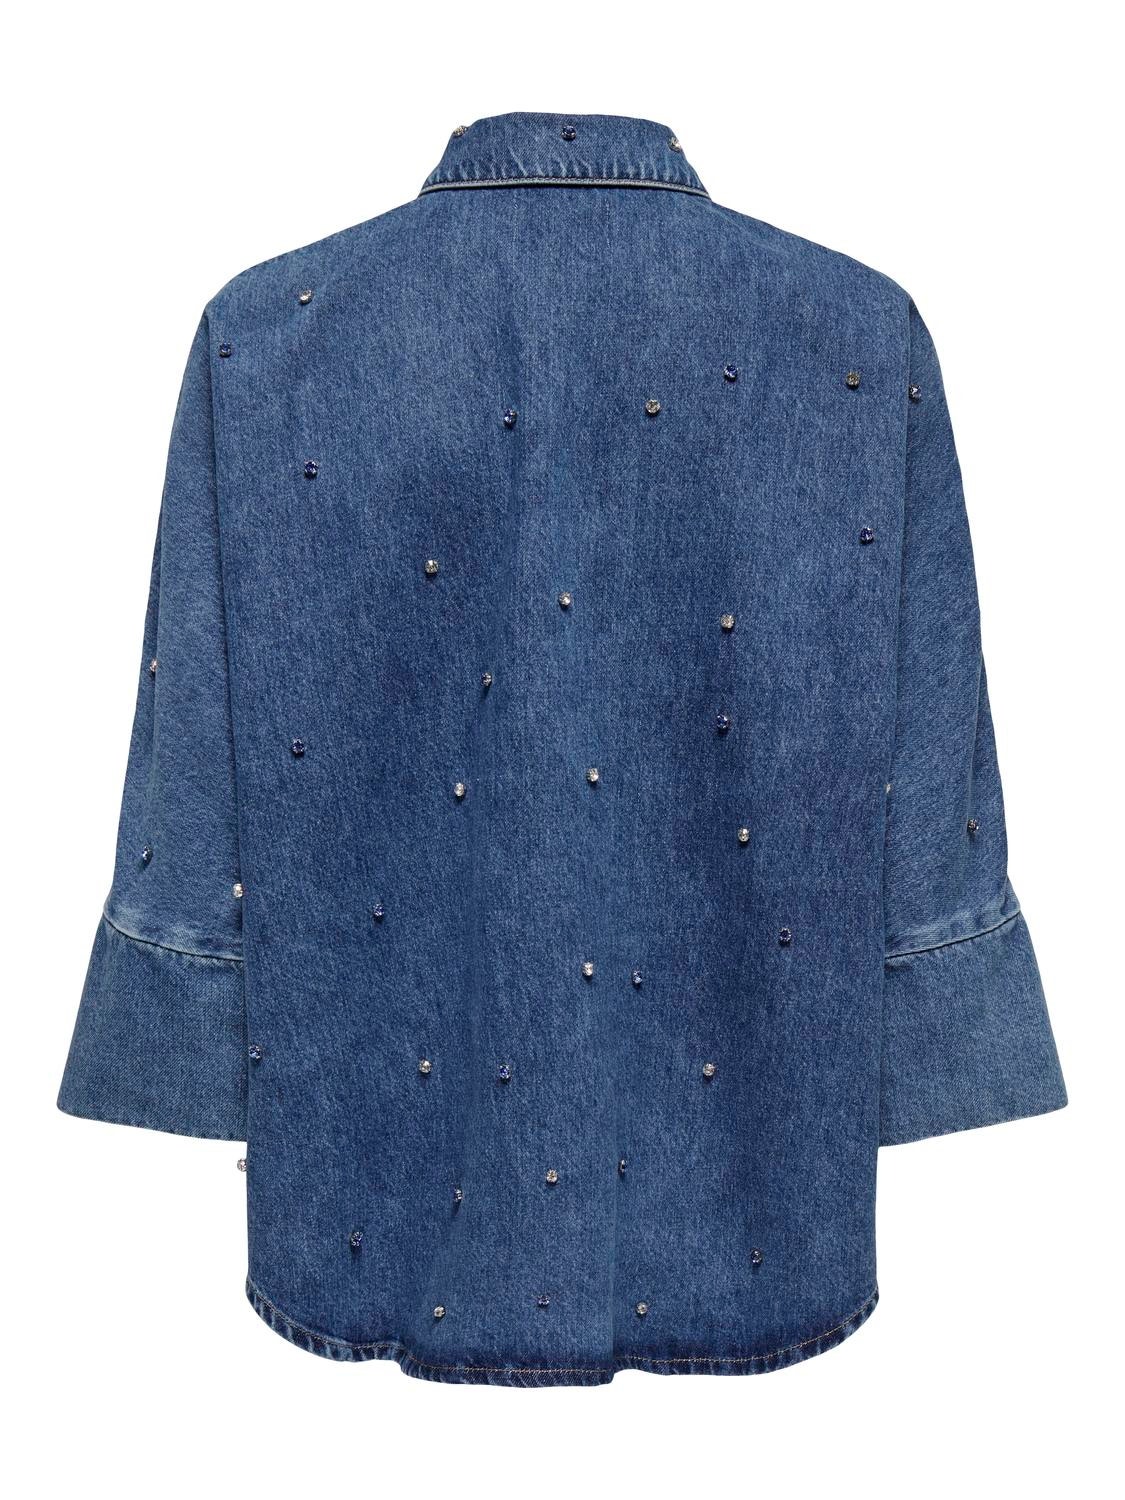 ONLY Oversize Fit Shirt collar High cuffs Shirt -Medium Blue Denim - 15307936